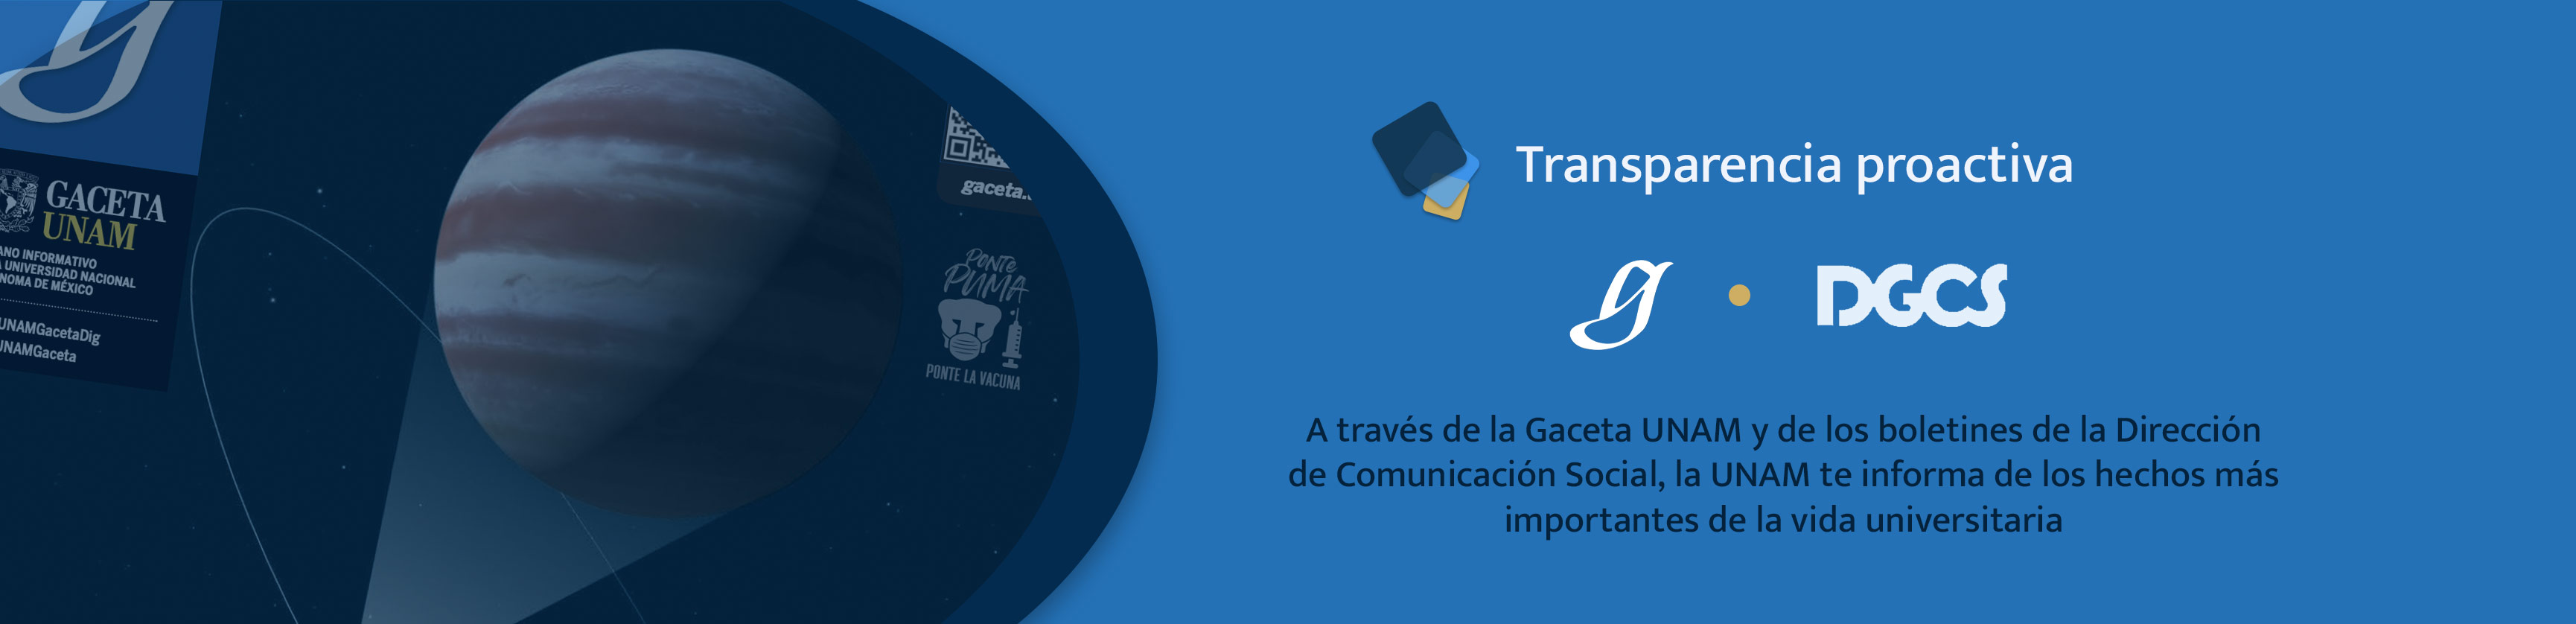 Transparencia Proactiva - Boletín de la Dirección de Comunicación Social y Gaceta UNAM